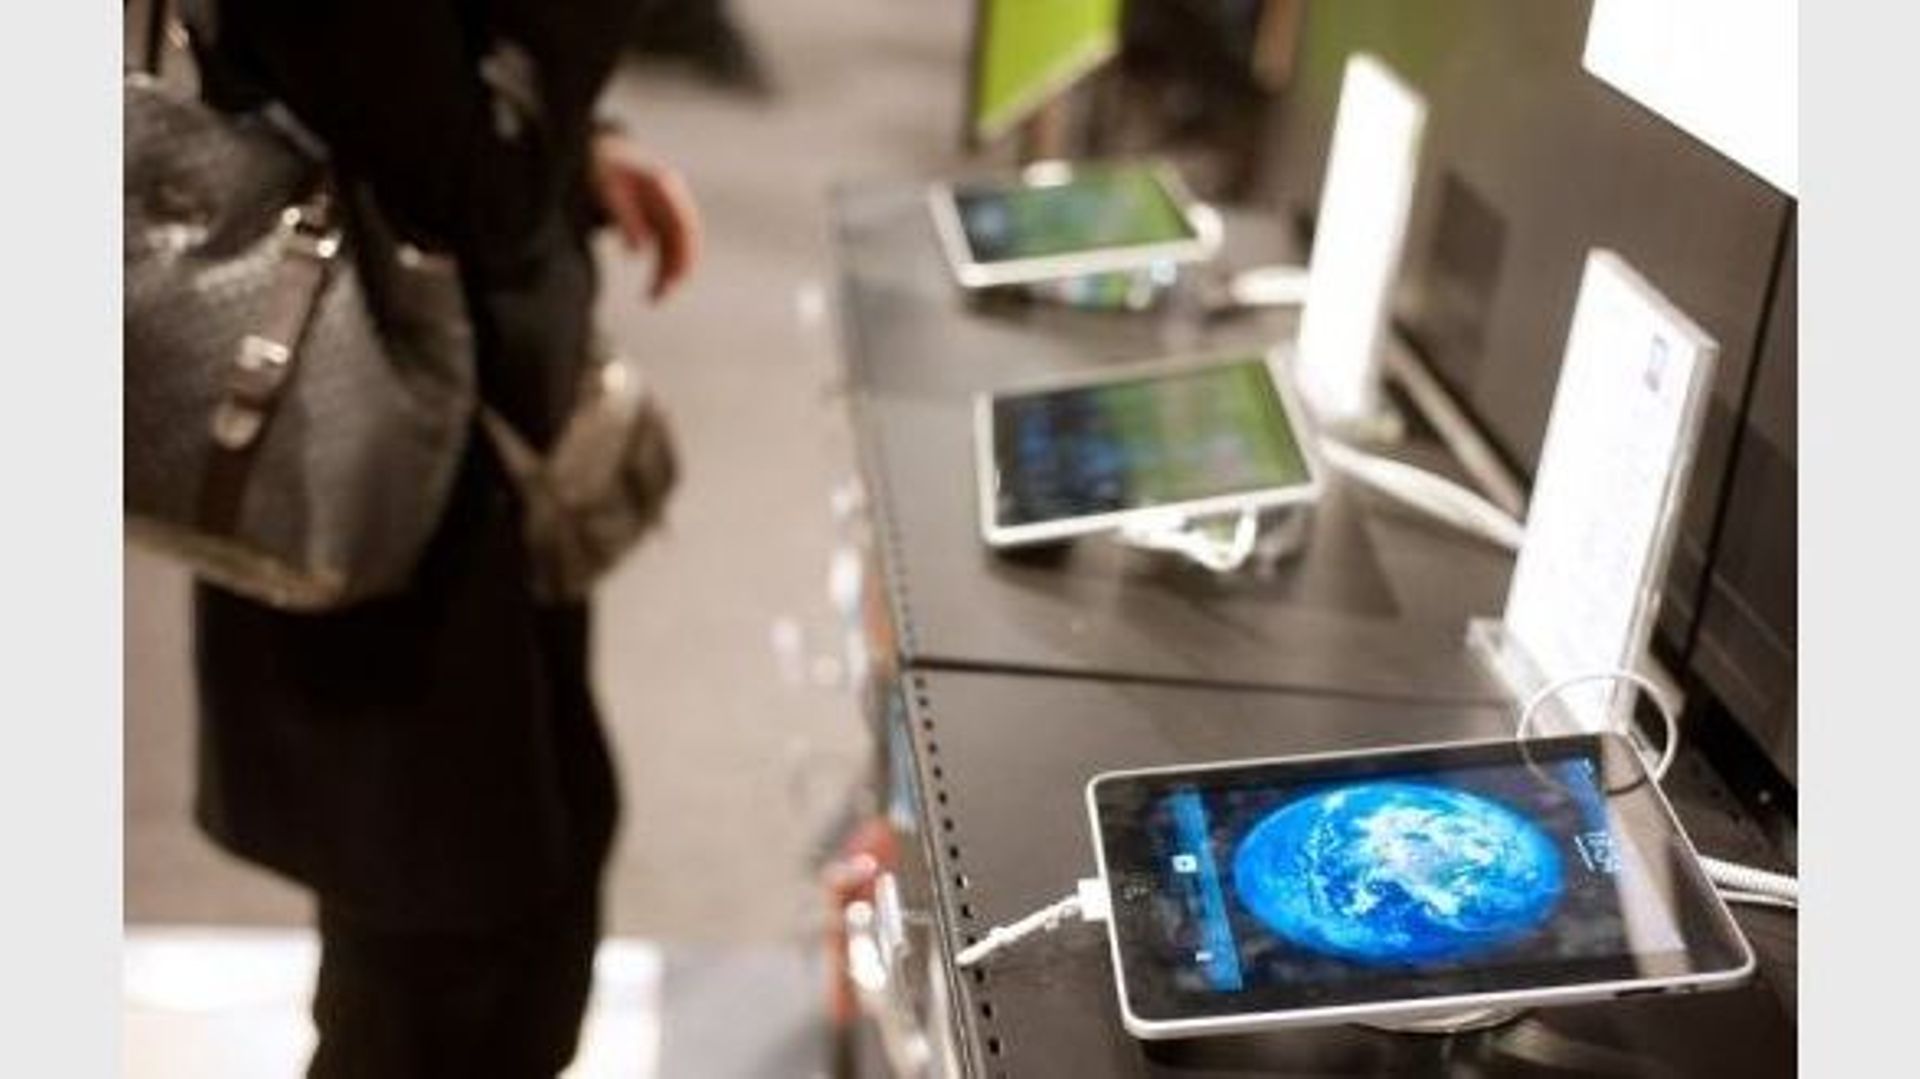 Des tablettes numériques sont présentées dans un magasin de matériel informatique à Paris, le 26 janvier 2011